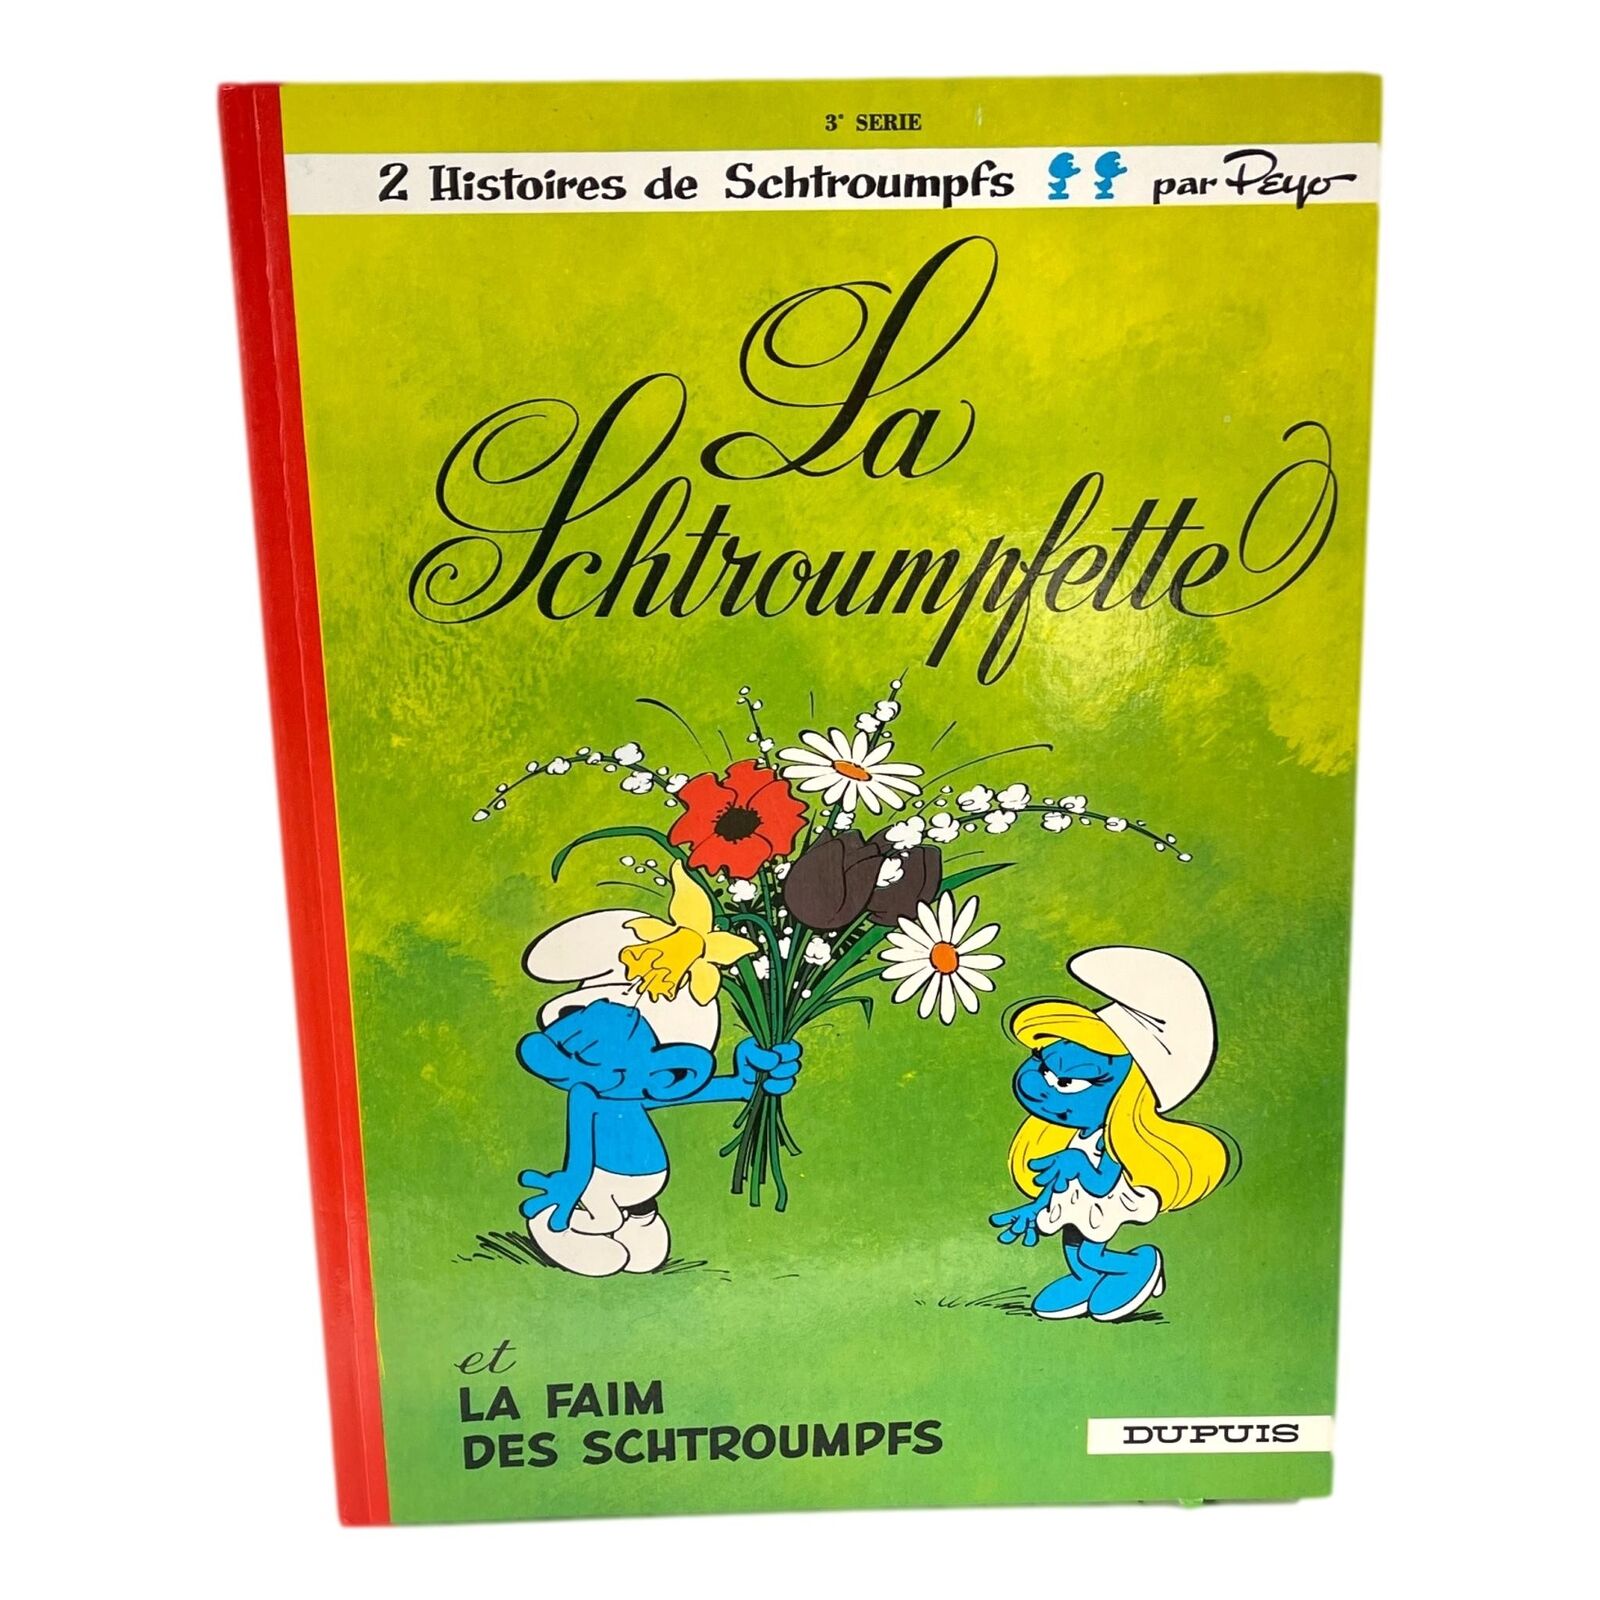 La Schtroumpfette Smurfs Book 2 Stories HC French Francais Dupuis Vintage 1976